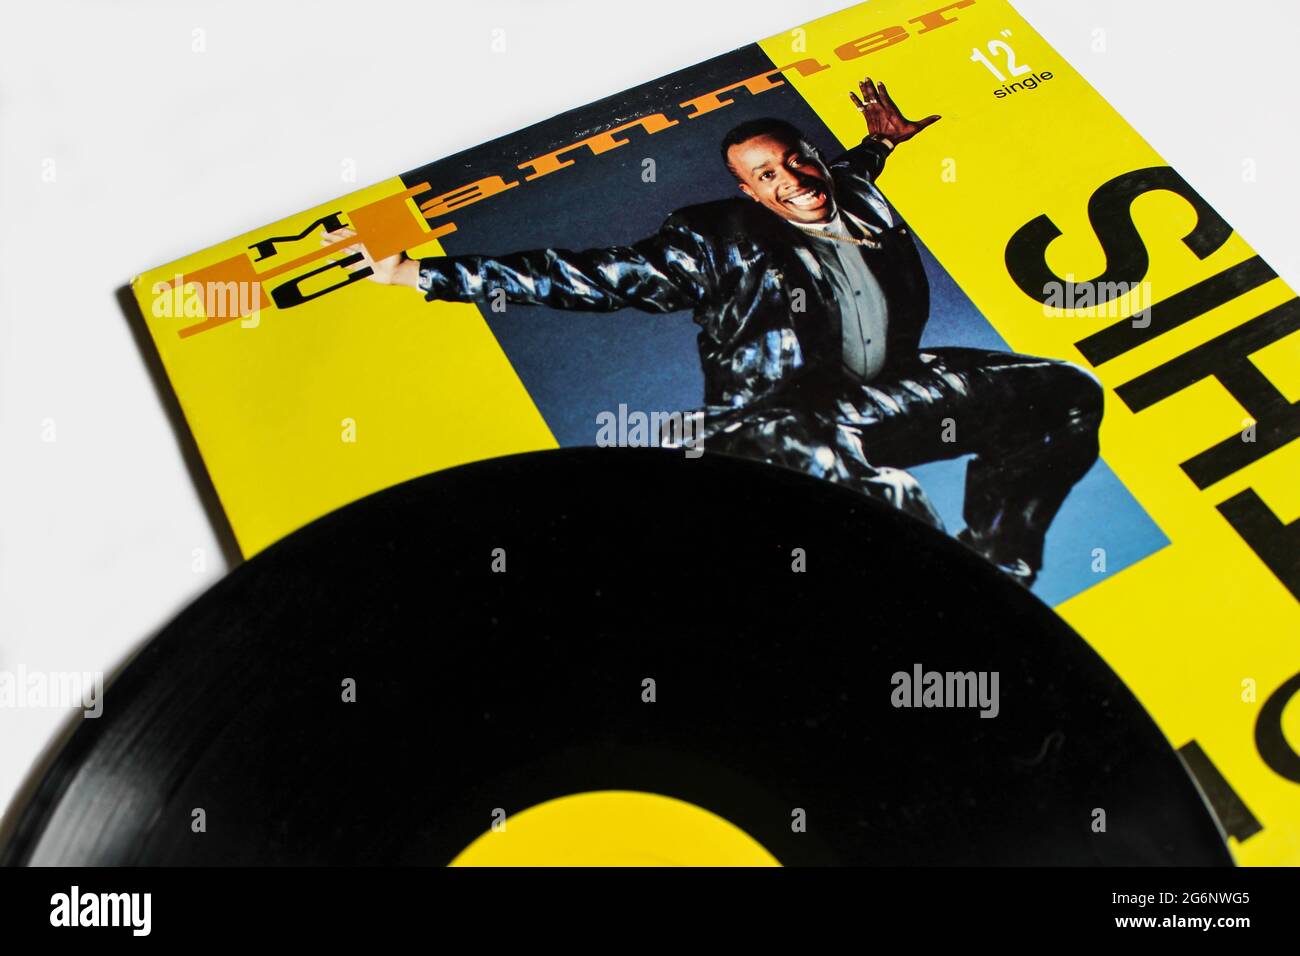 Hip-Hop- und Pop-Rap-Künstler, MC Hammer-Musikalbum auf Vinyl-Schallplatte. Titel: U kann dieses Albumcover nicht berühren Stockfoto